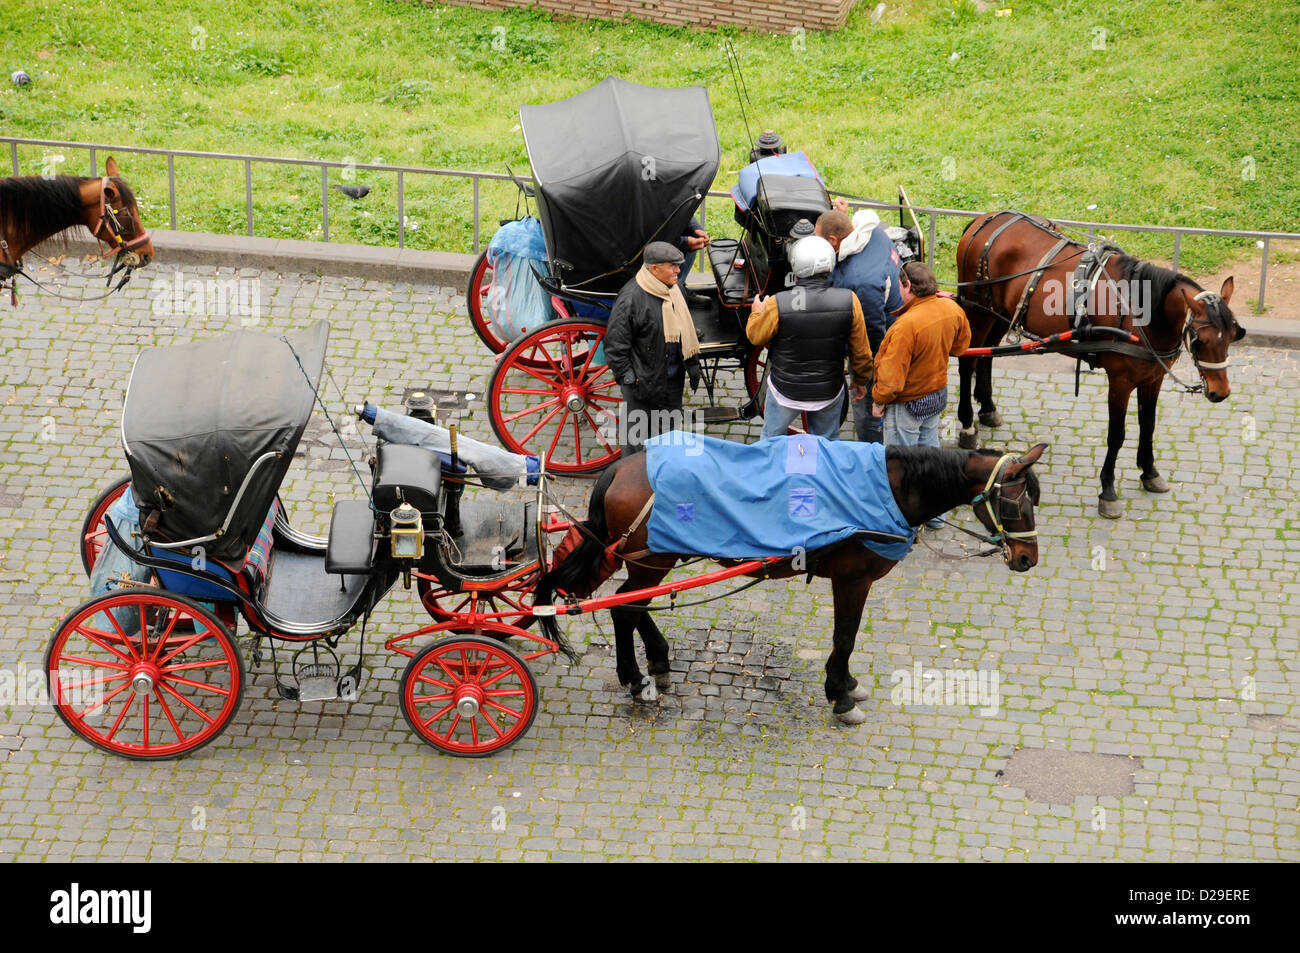 En chariots. Rome, Italie. Banque D'Images